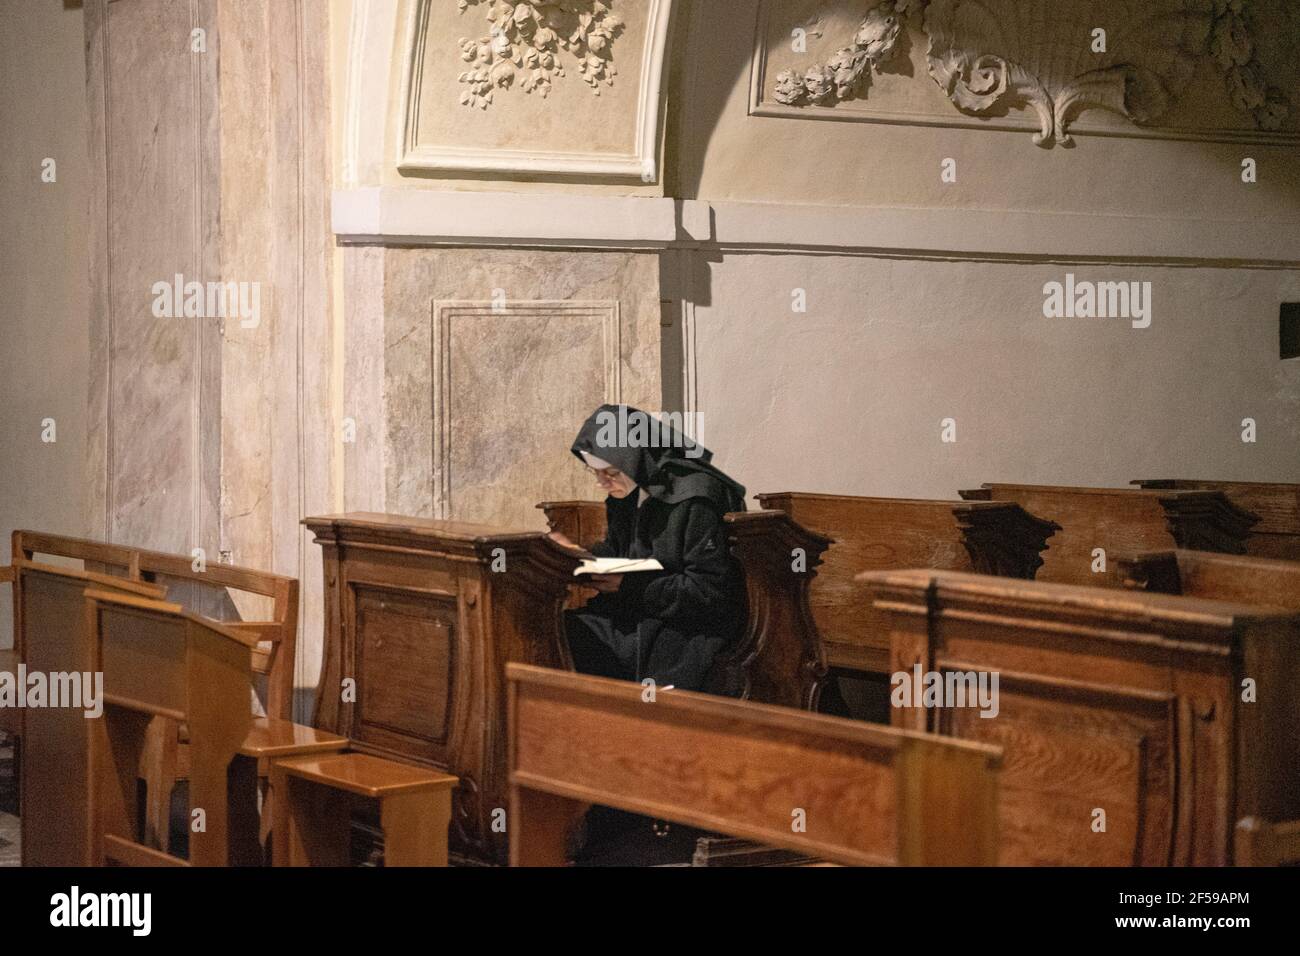 Una monaca cattolica caucasica solita che indossa un'abitudine nera e legge il libro, concentrata sotto la luce naturale in una zampa all'interno di una cattedrale. Foto Stock